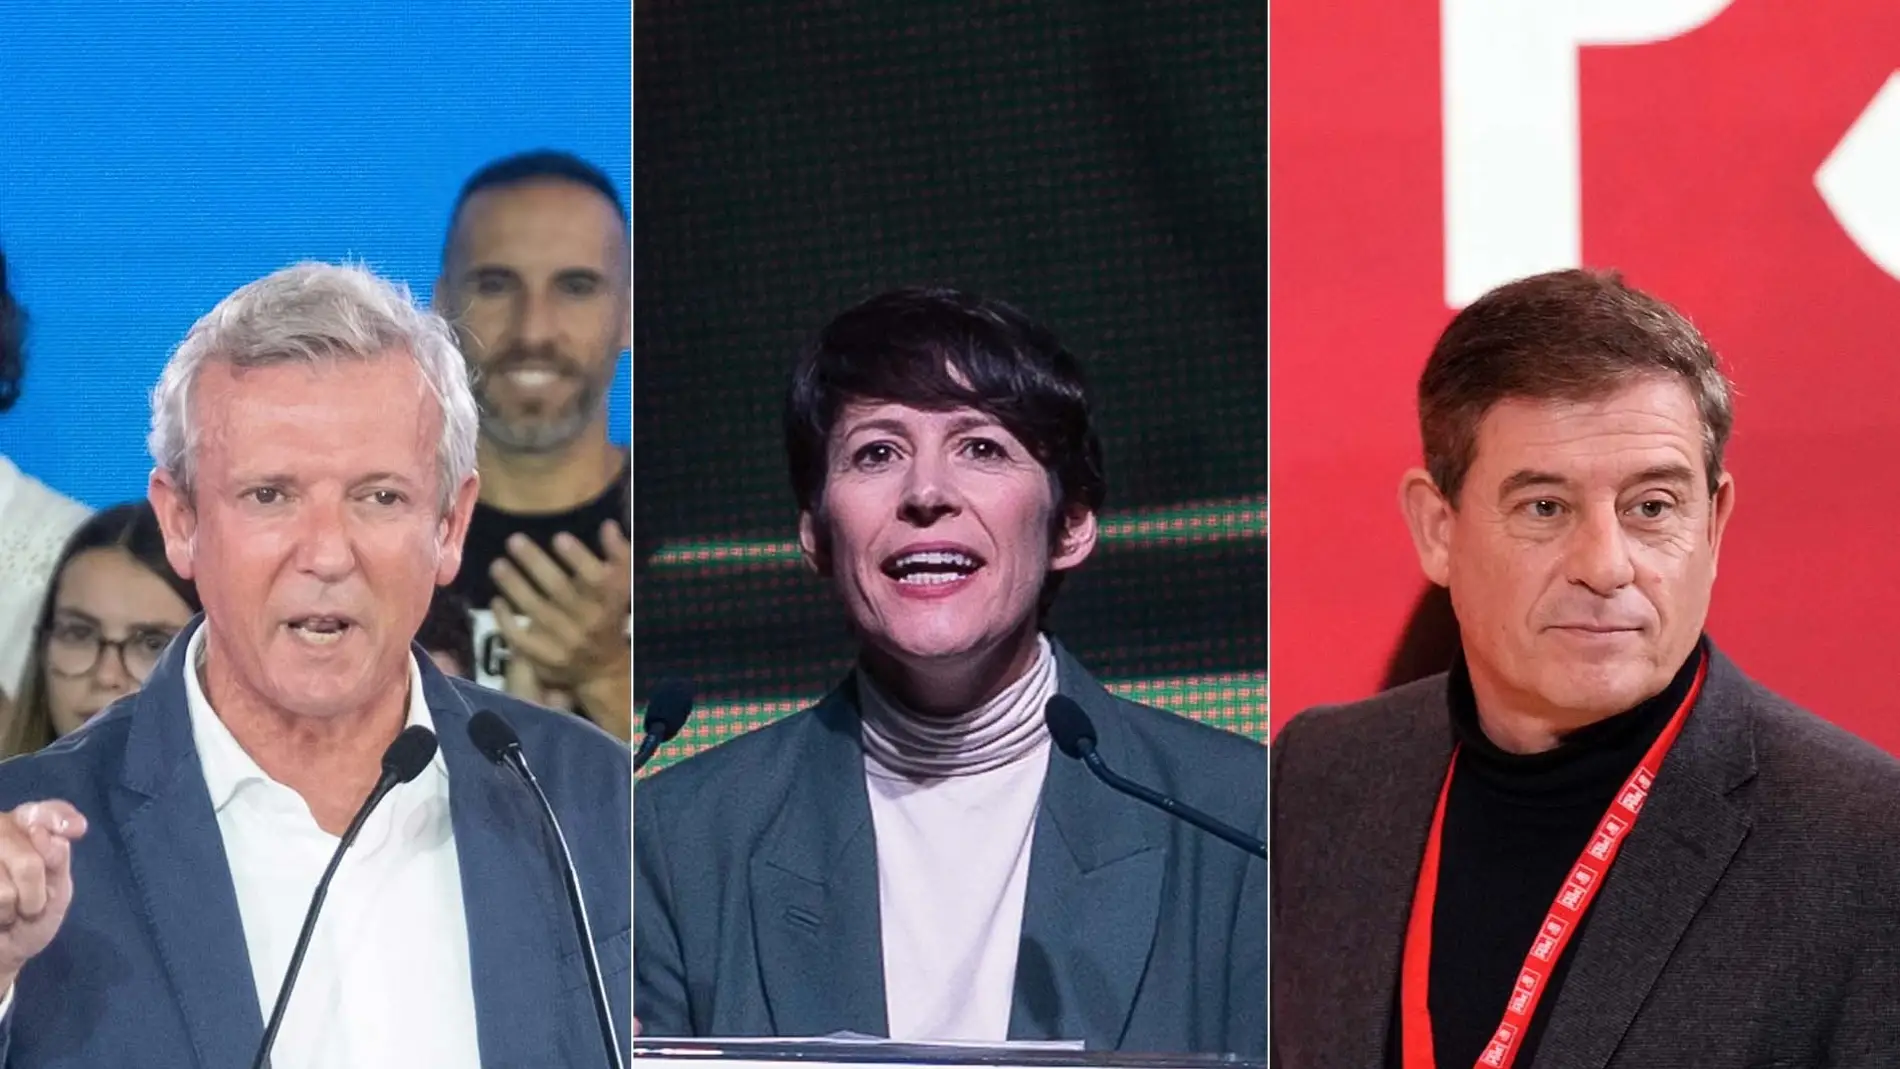 Los candidatos del PPdeG, Alfonso Rueda, del BNG, Ana Pontón, y del PSdeG, José Ramón Gómez Besteiro, a la Presidencia de la Xunta en las elecciones del 18 de febrero.